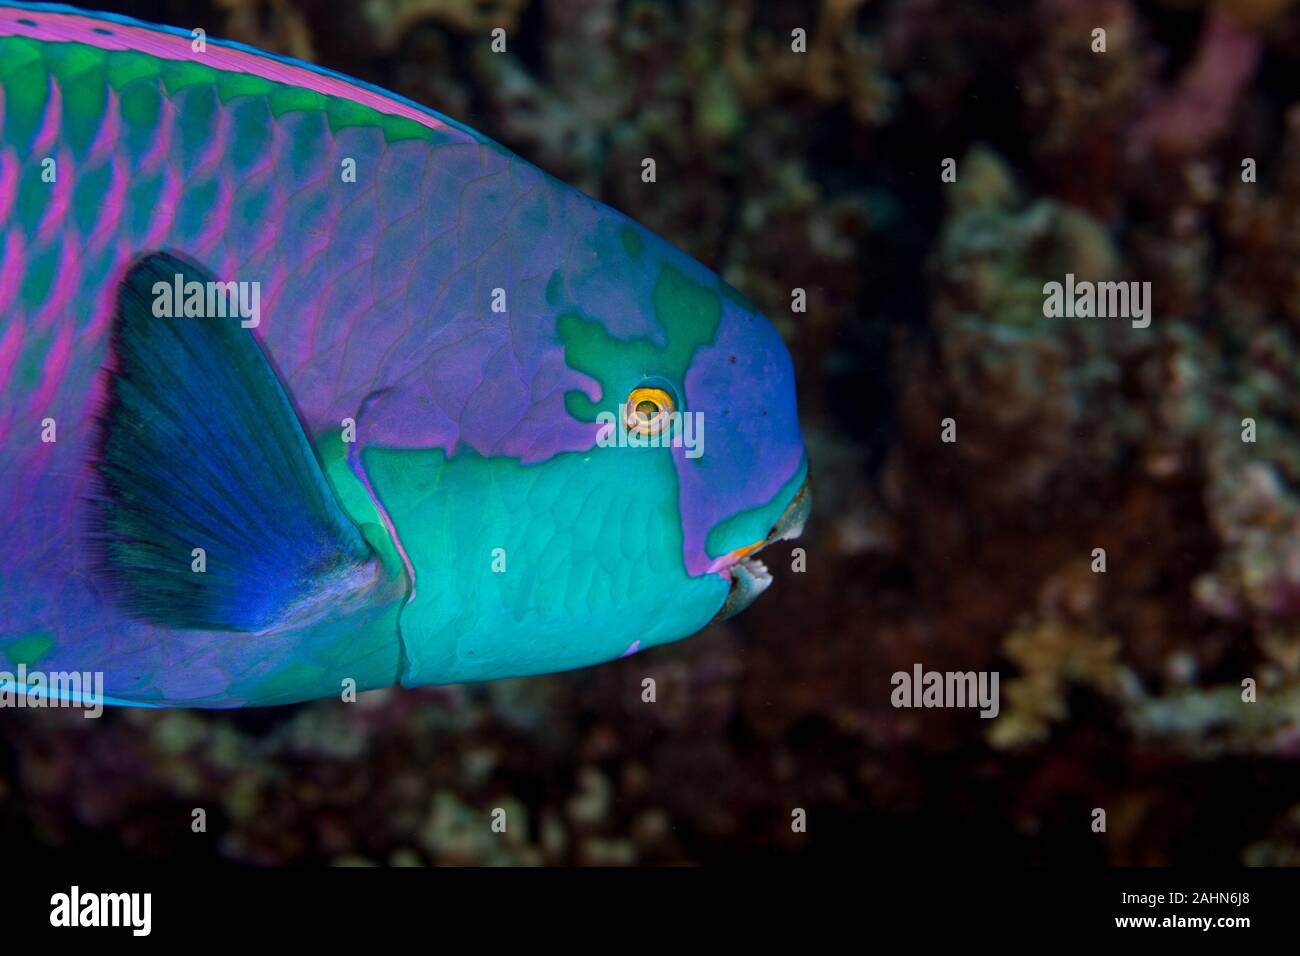 Indian Ocean Steephead Parrotfish, Heavybeak Parrotfish, Purple-headed Parrotfish, Steephead Parrotfish, Chlorurus strongylocephalus, scarus strongylo Stock Photo